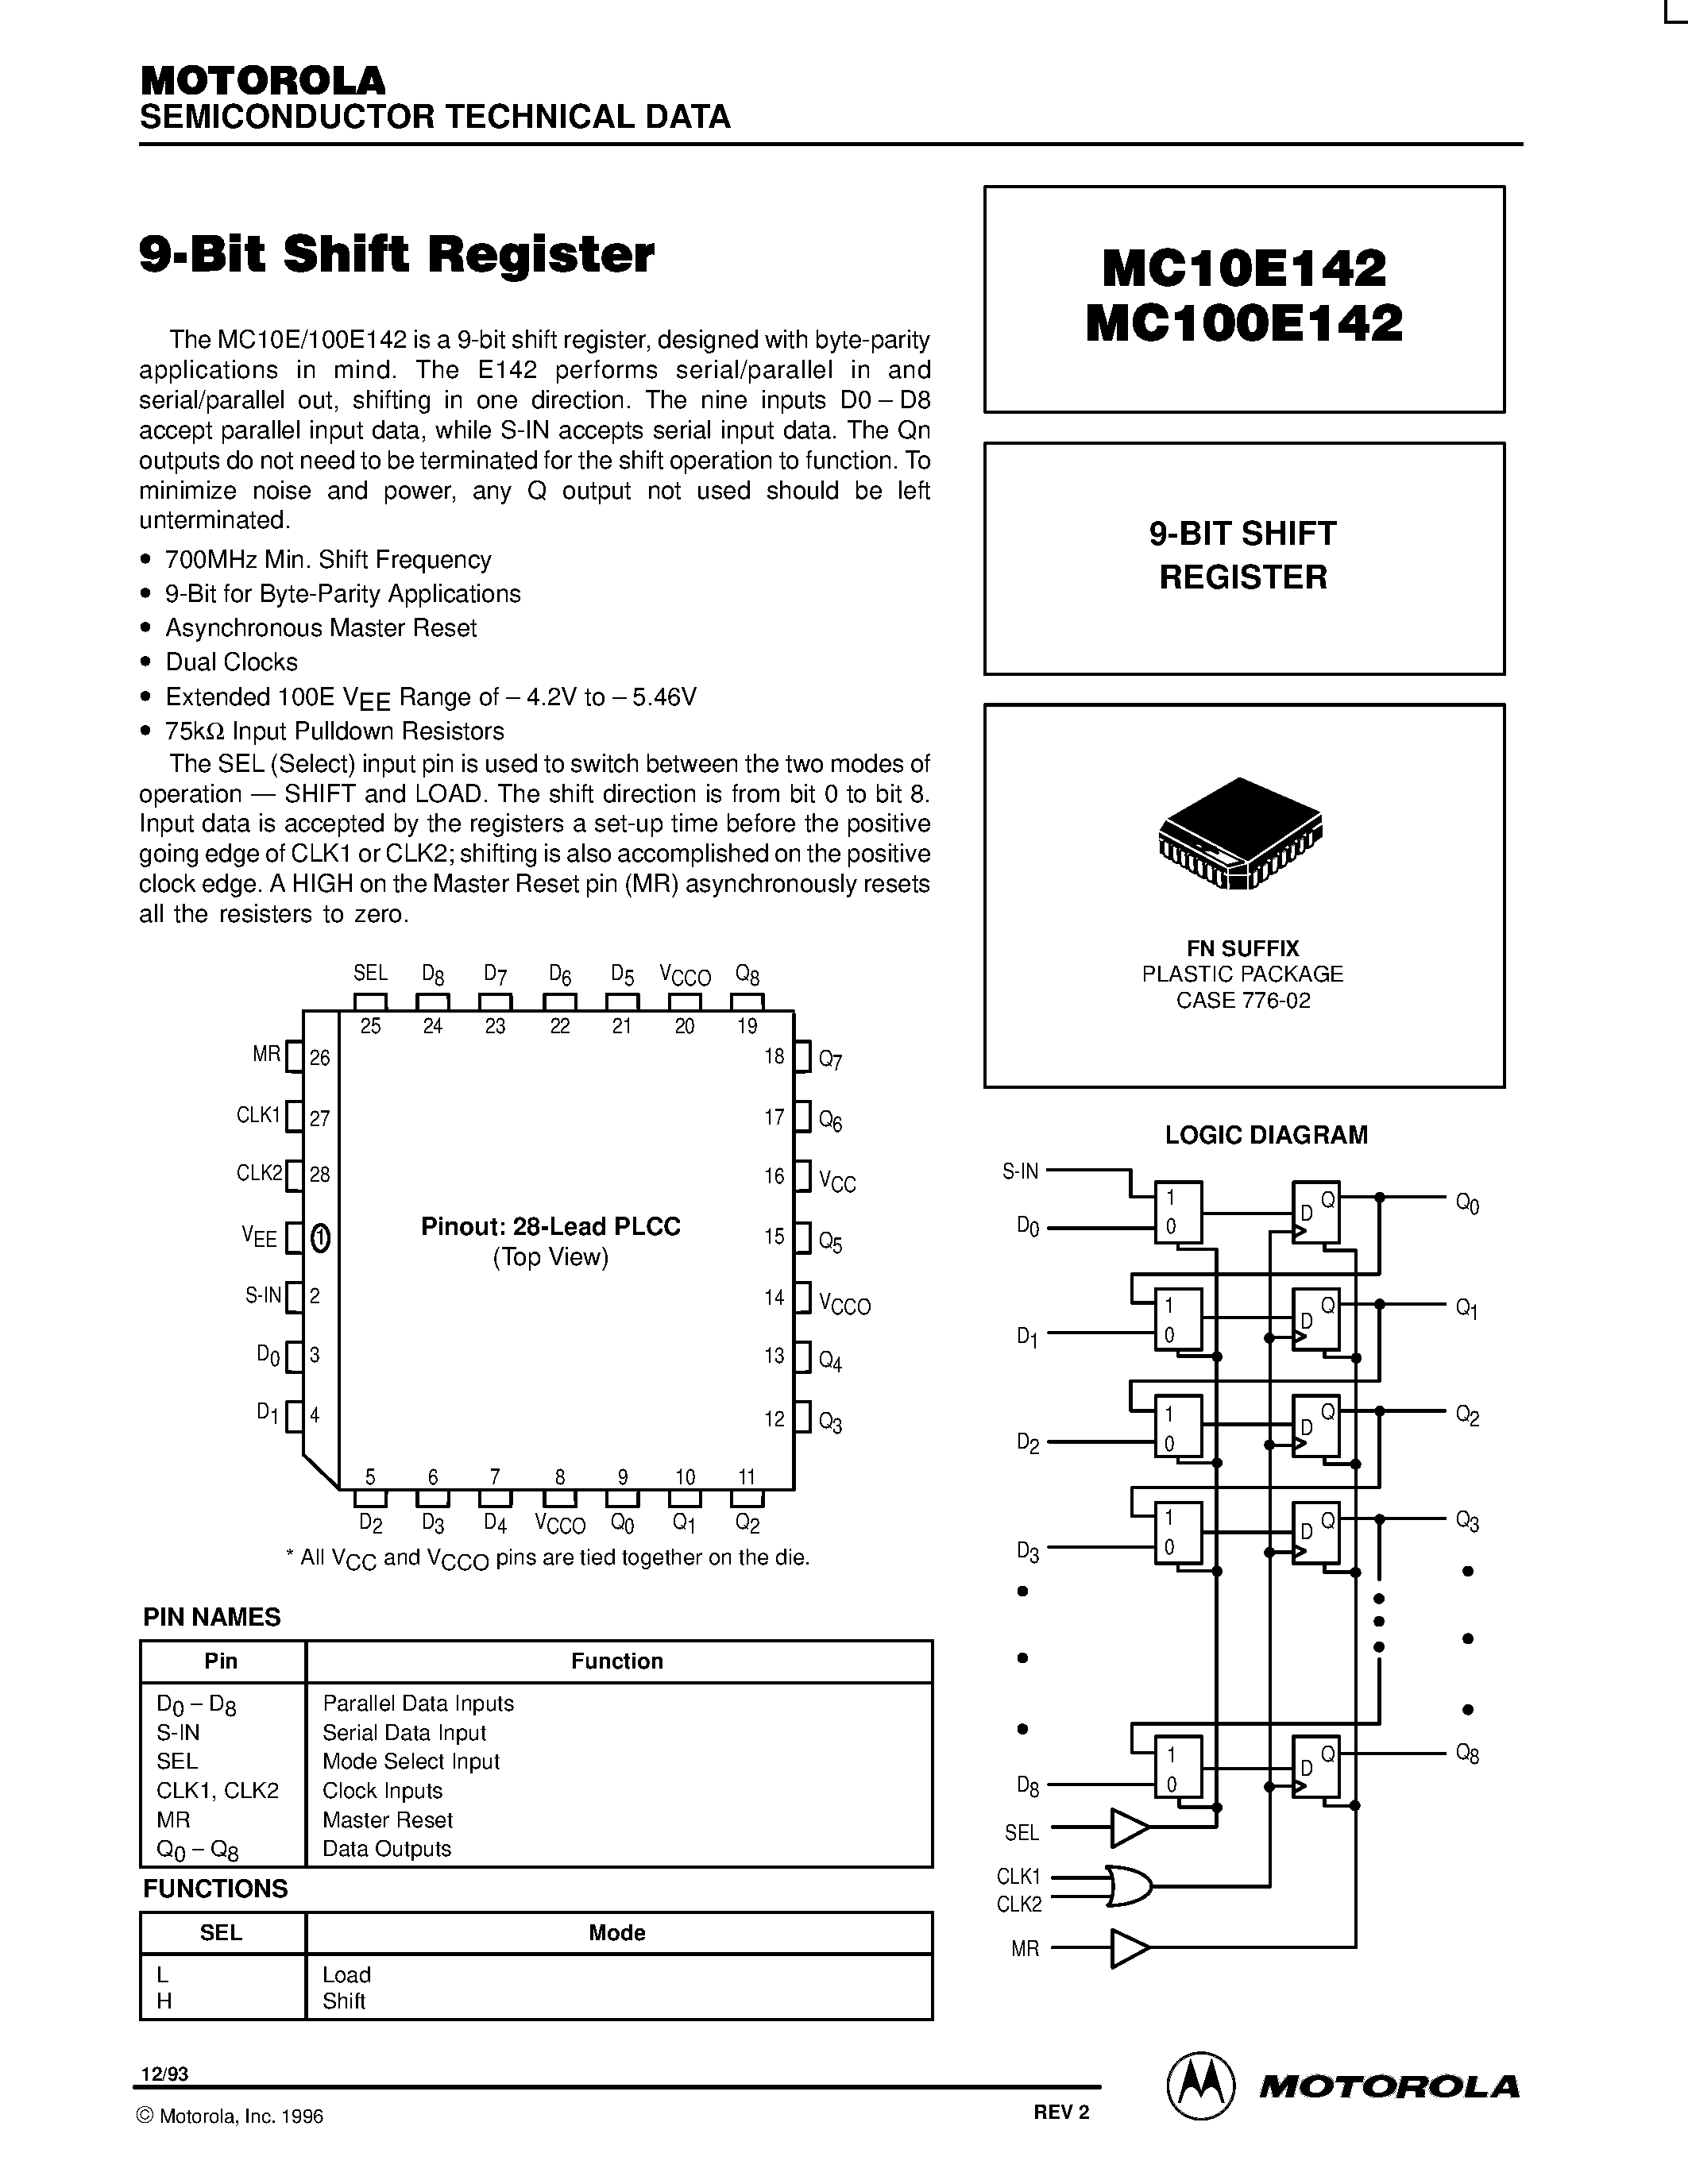 Даташит MC100E142FN - 9-BIT SHIFT REGISTER страница 1